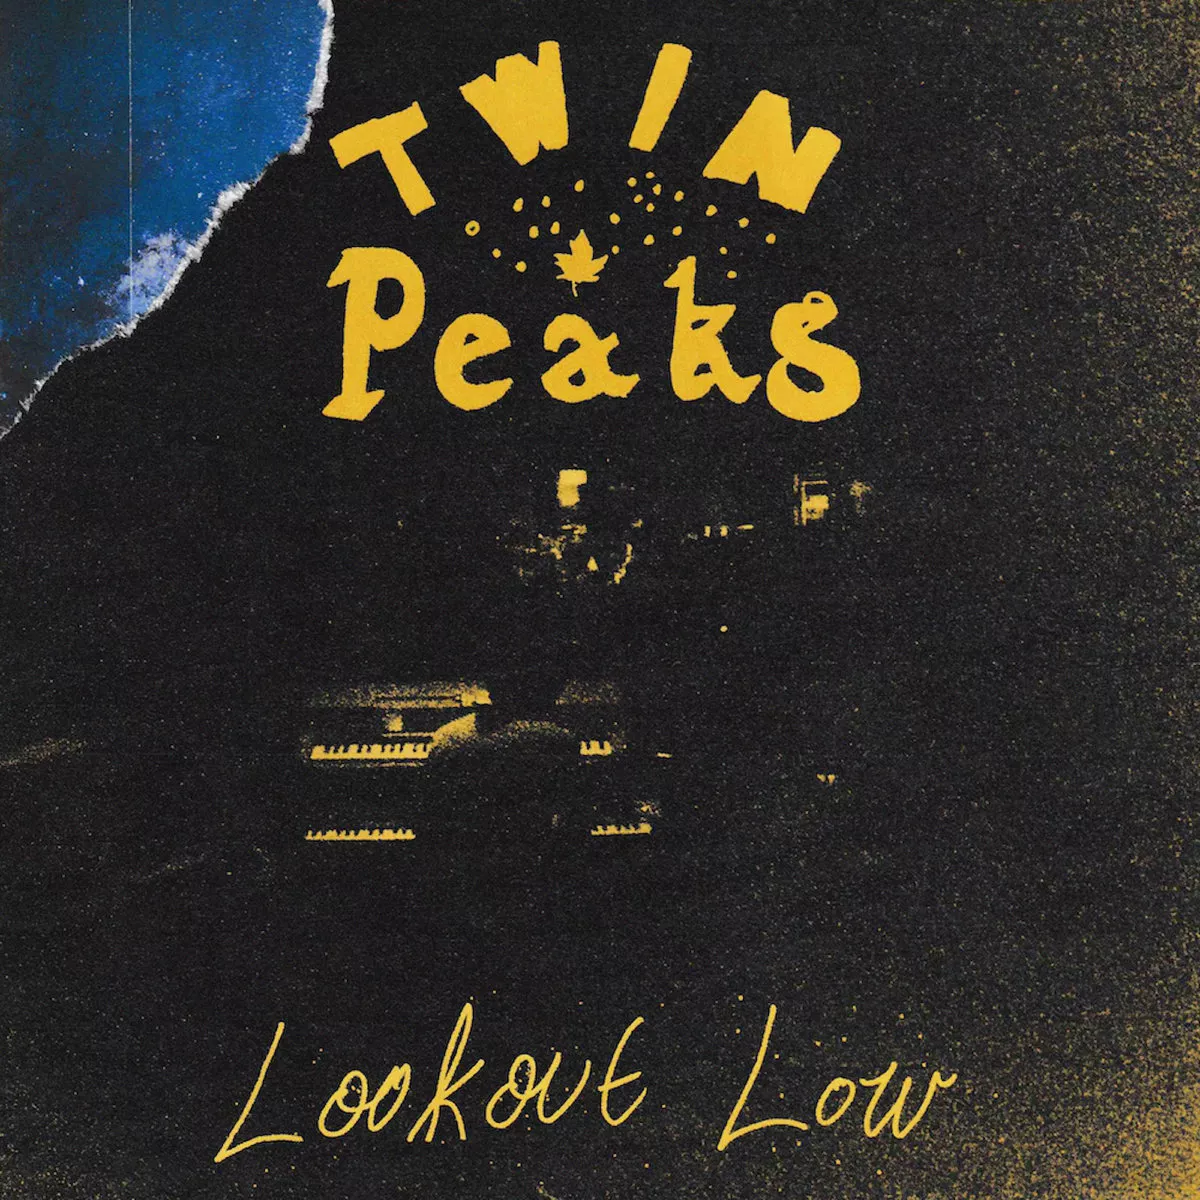 Lookout Low - Twin Peaks